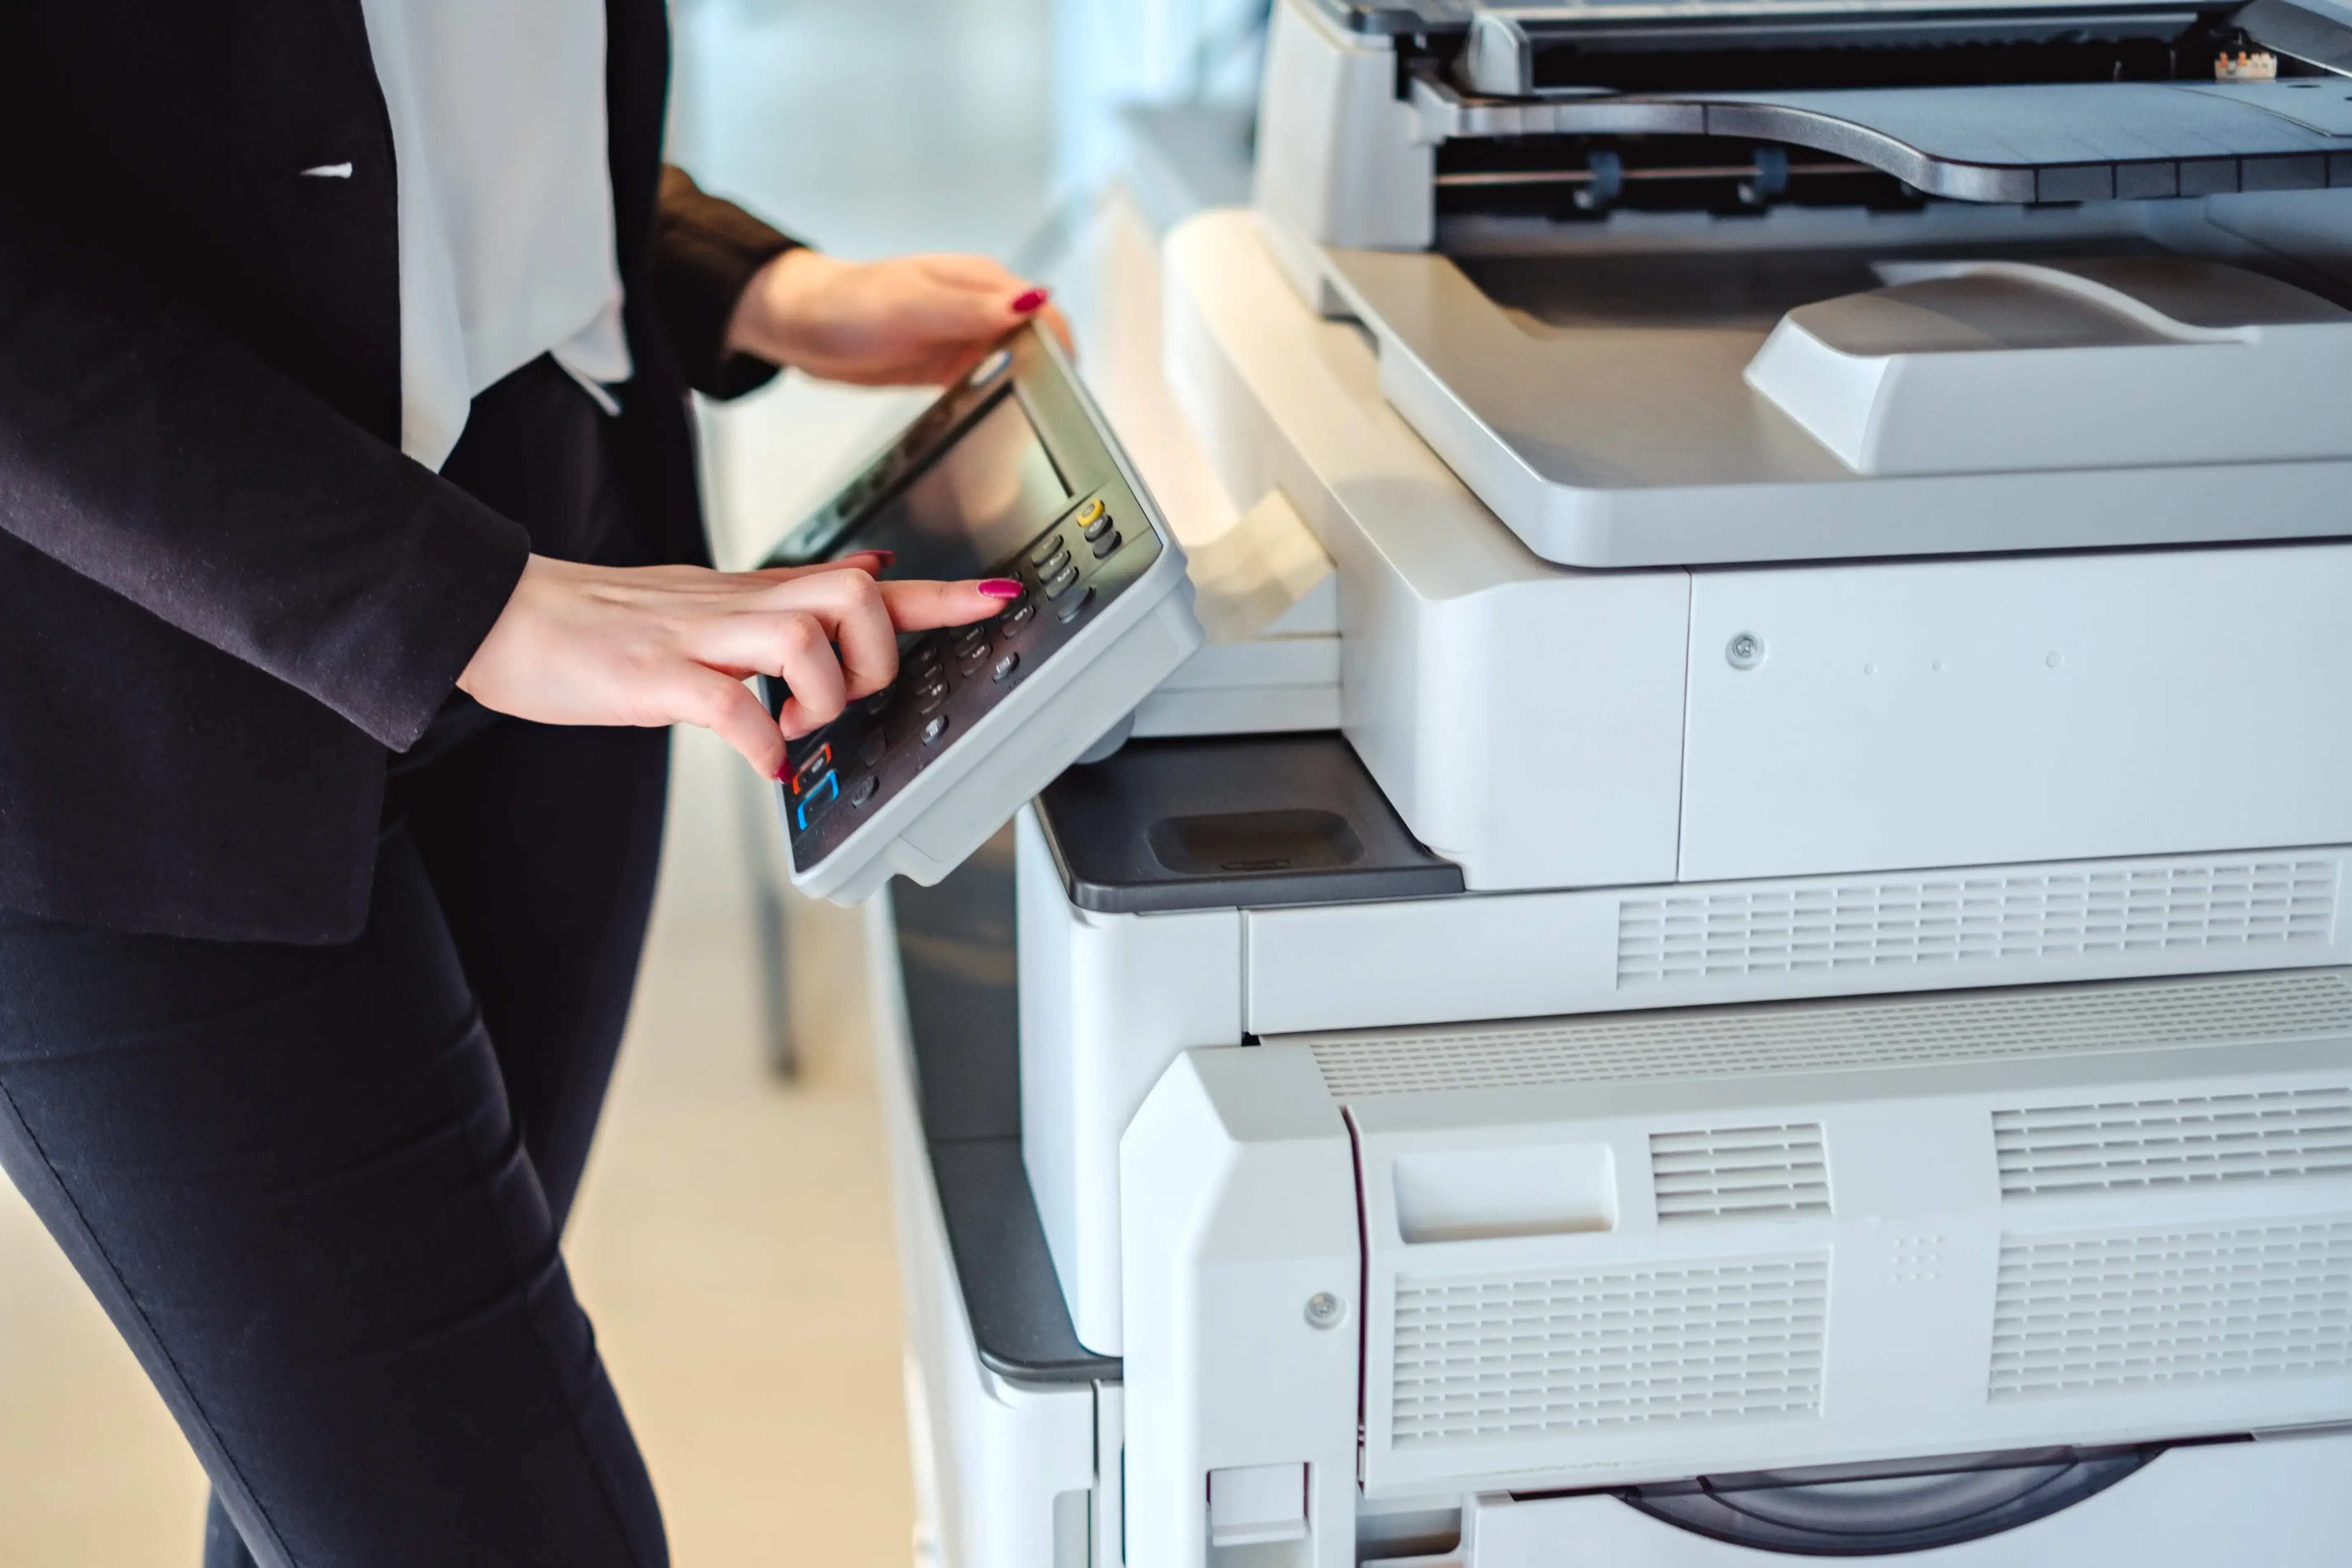 Female financial advisor using a printer.